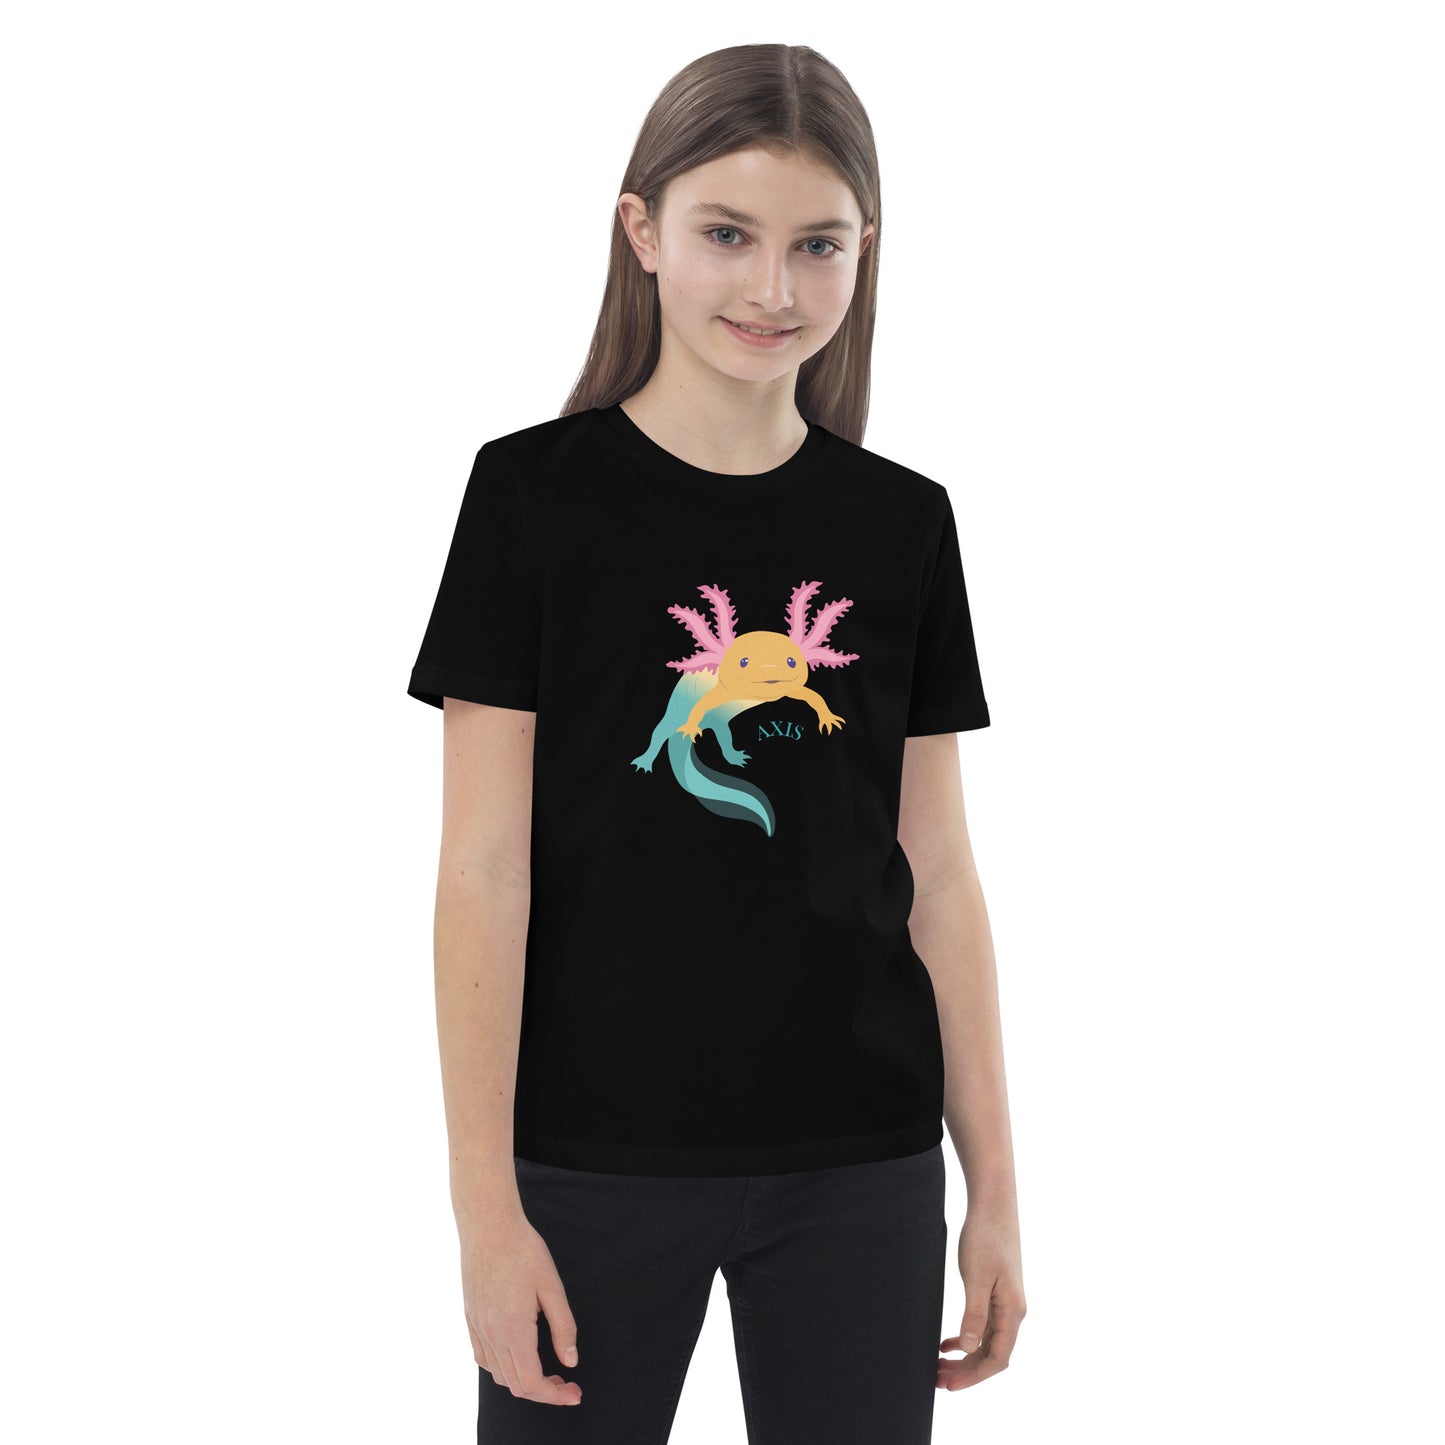 Barn T-shirt i färgen svart. Ekologisk bomull och tryck med axolotlen Axis.